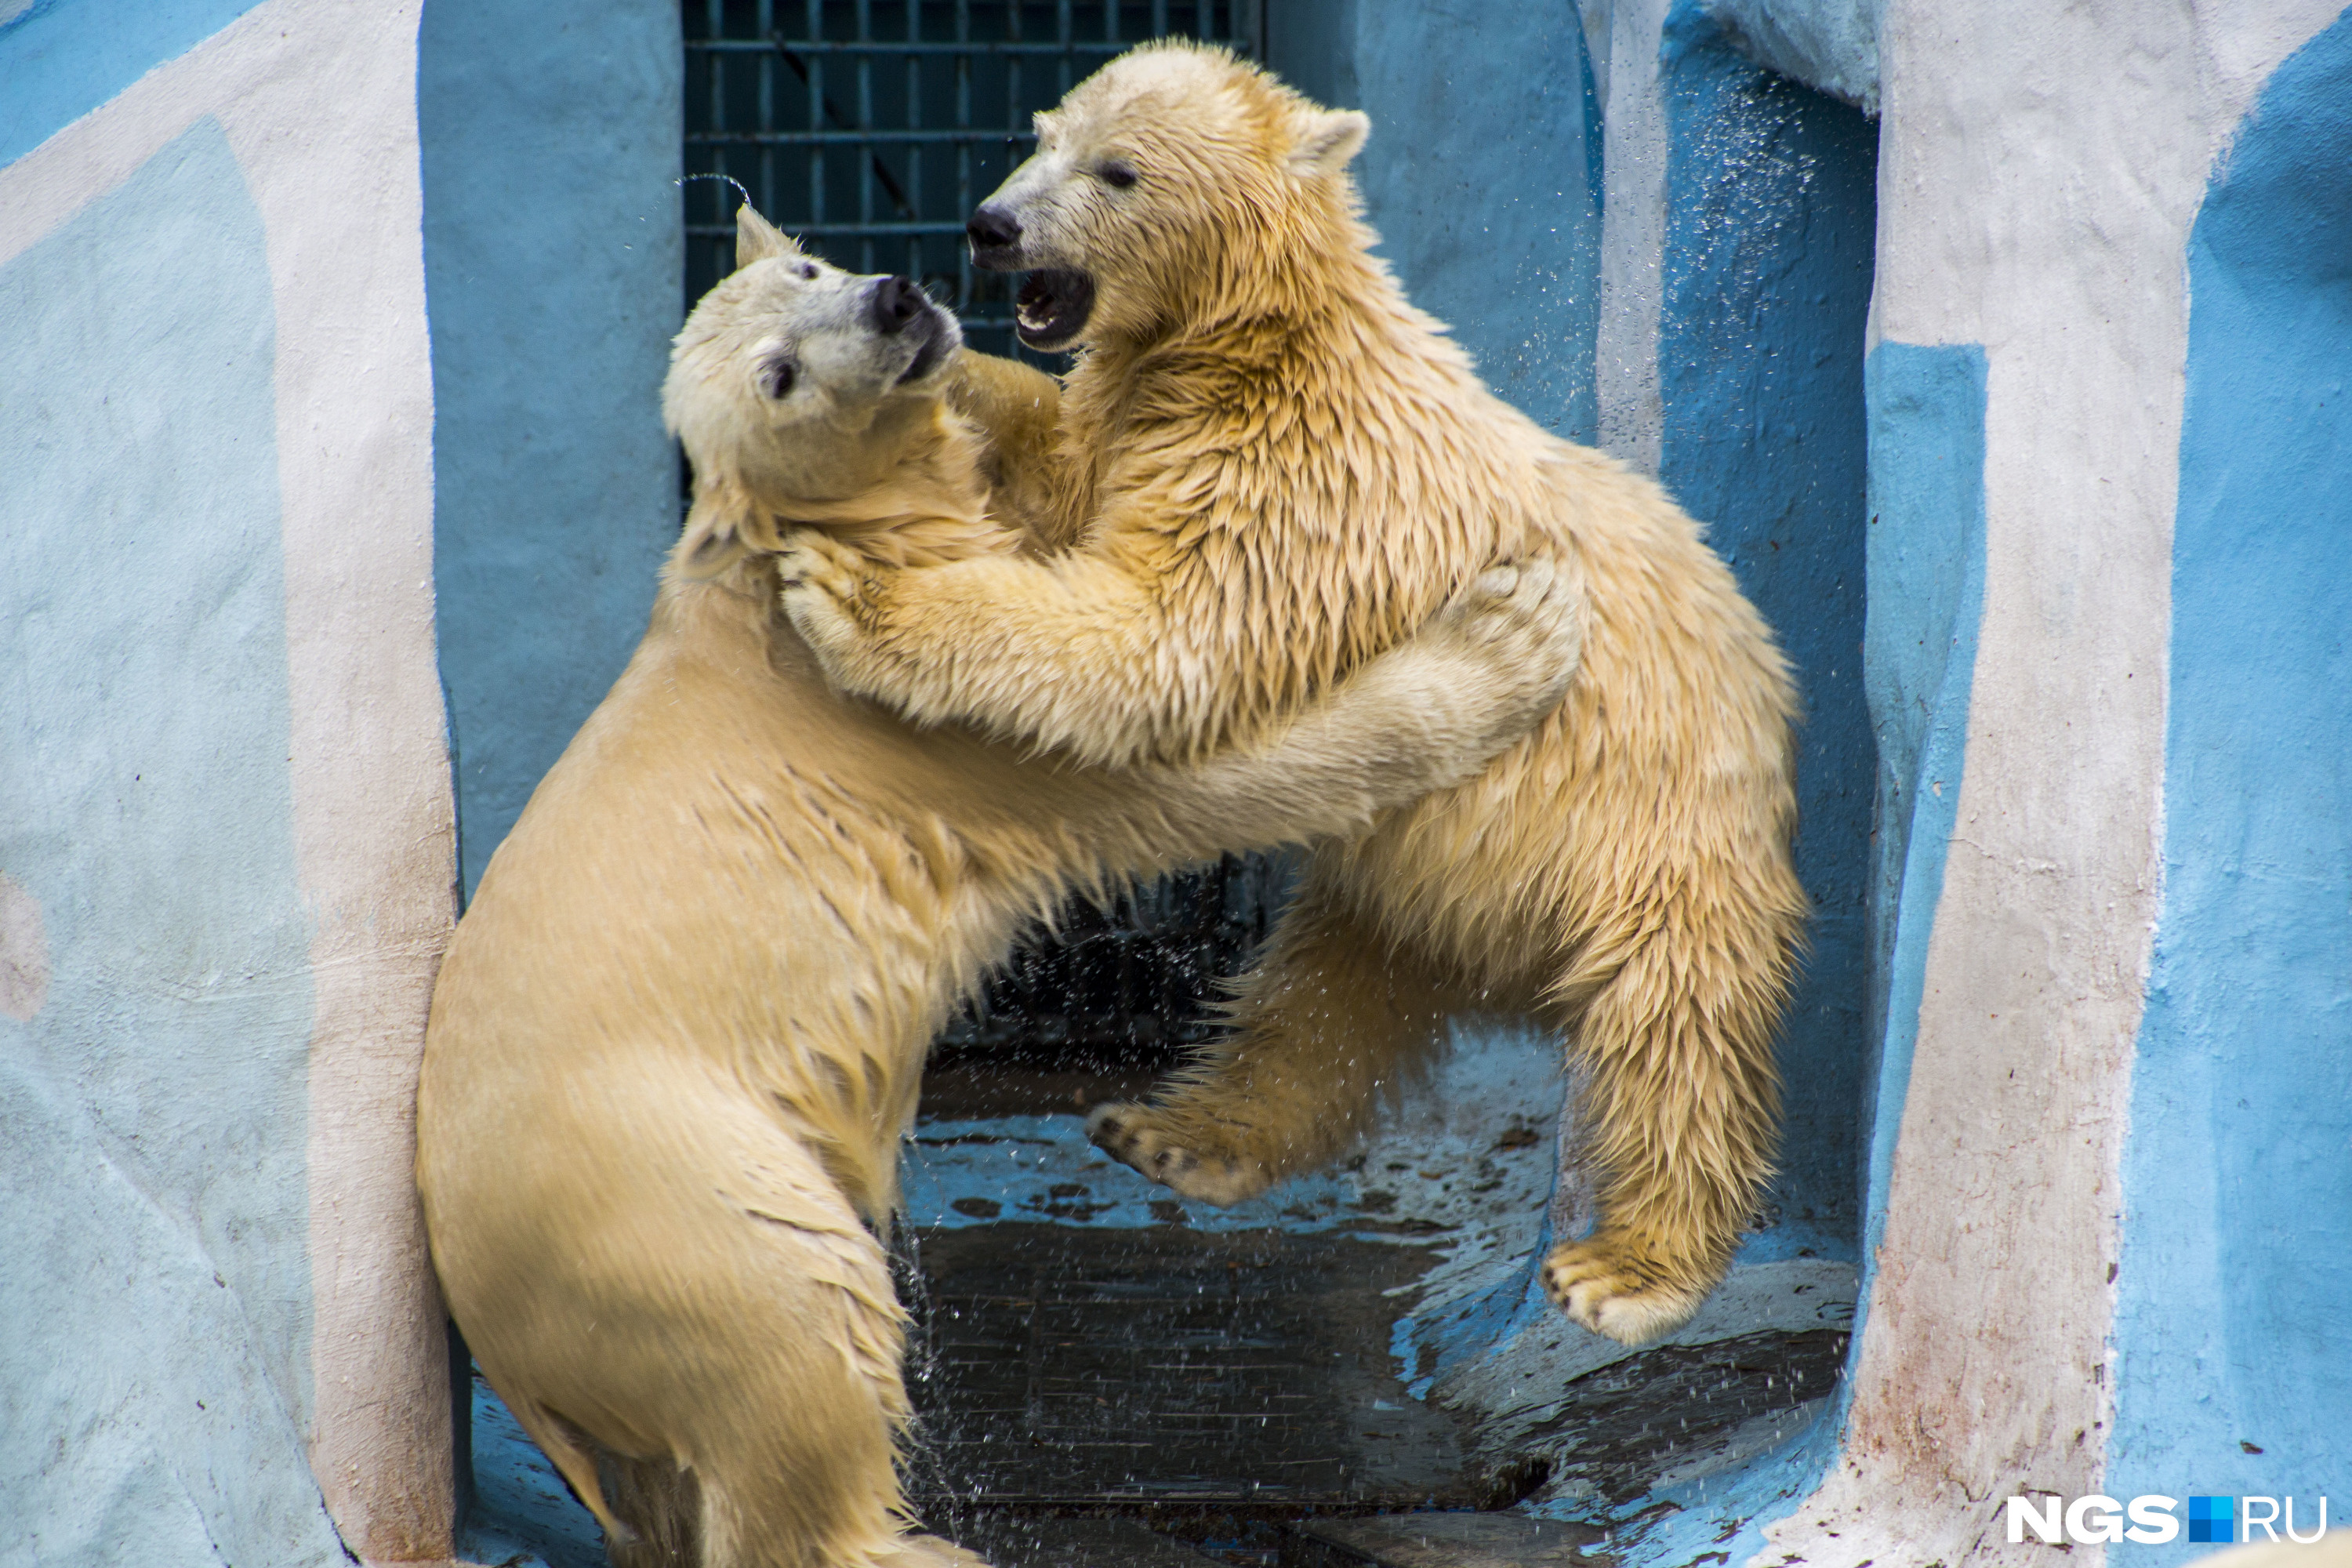 Детёныши белых медведей появляются на свет беспомощными и незрячими. Но разве поверишь в это, глядя на борьбу двух косолапых толстячков?